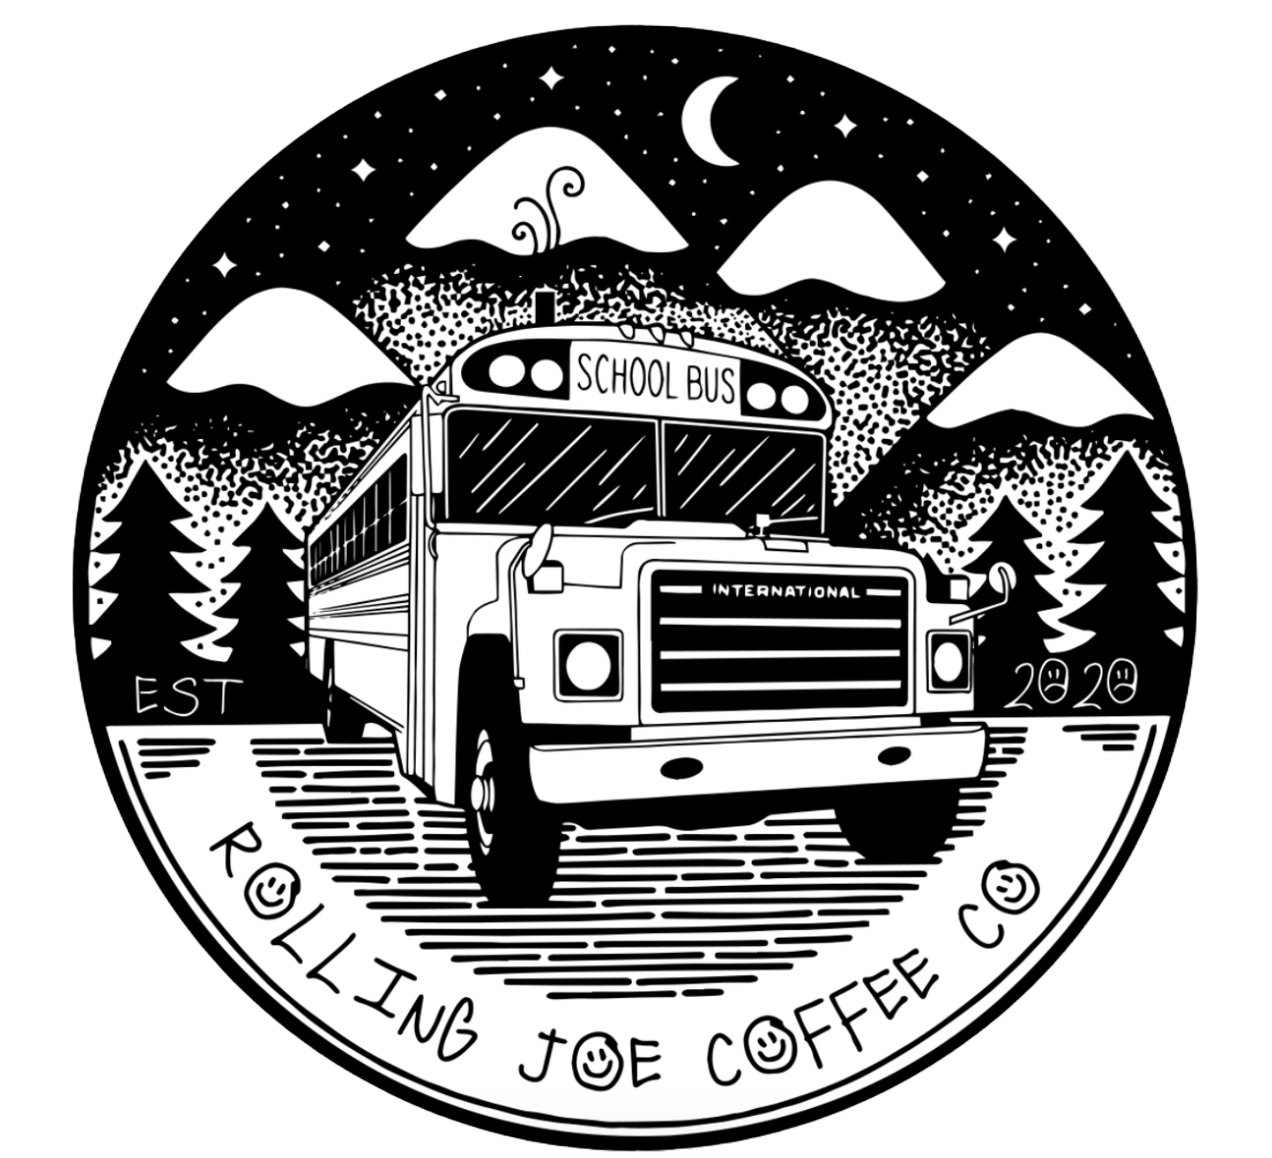 ROLLING JOE COFFEE CO